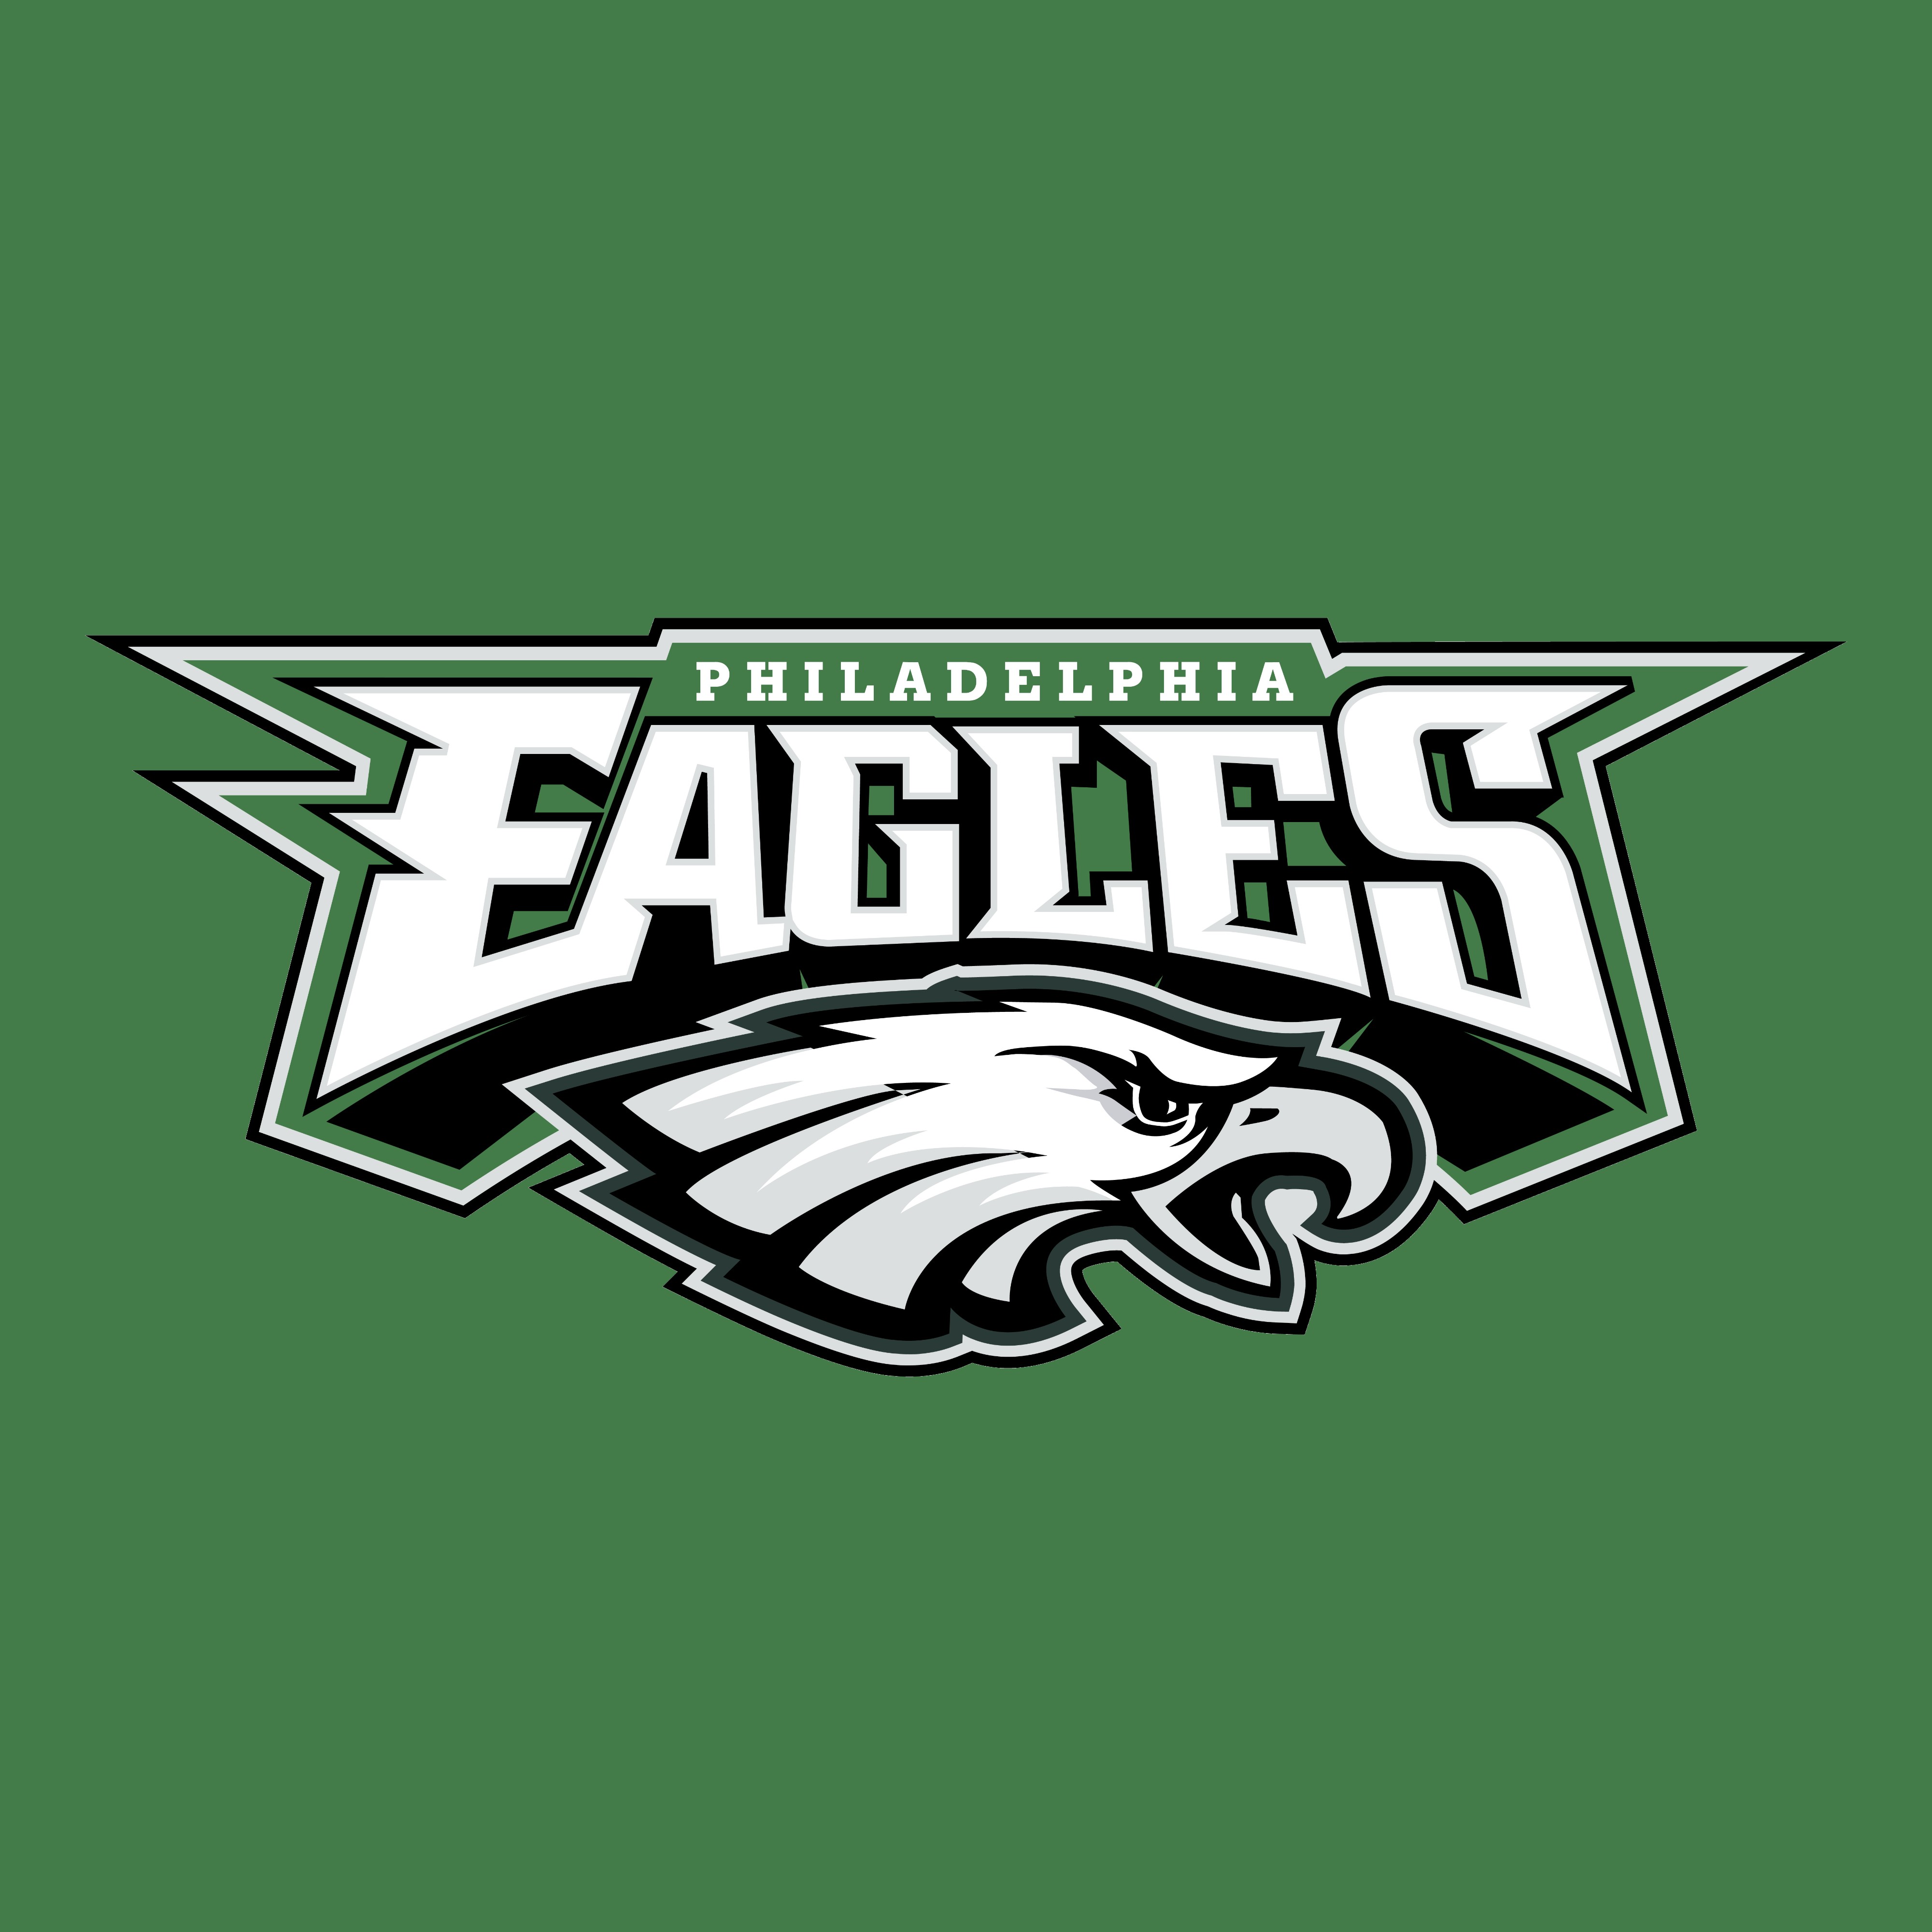 city, Philadelphia Eagles, NFL, American football, Logotype, Eagle Wallpaper